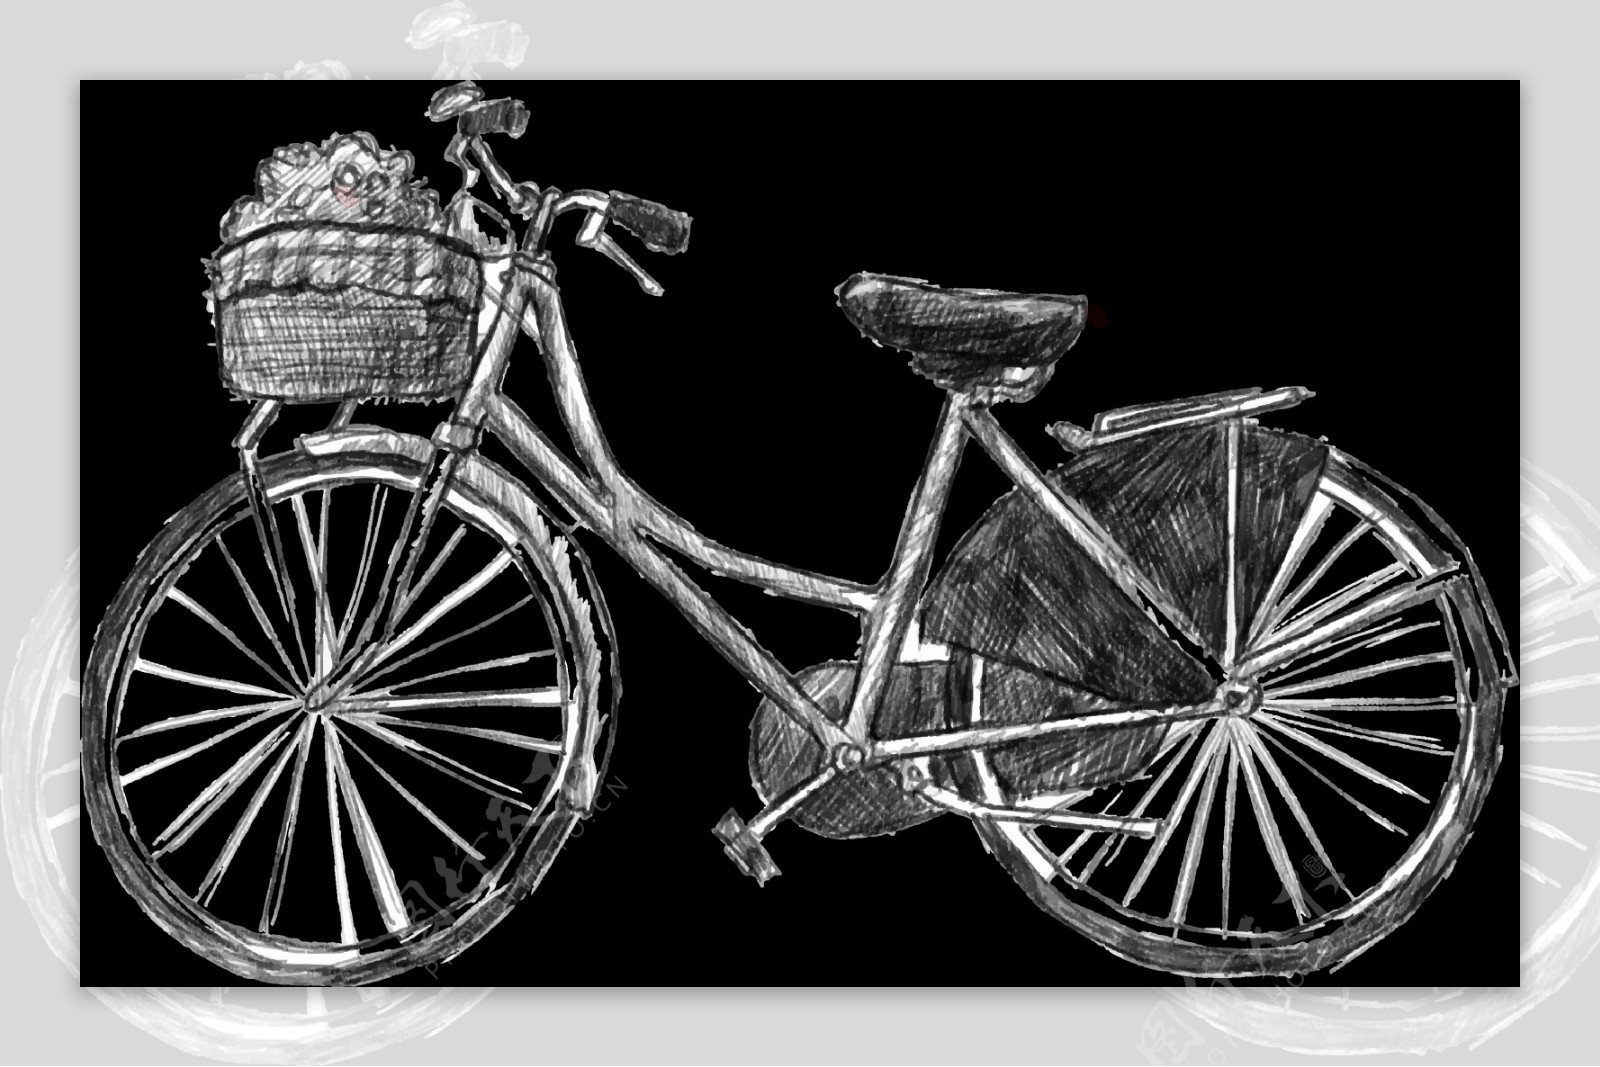 手绘素描风格自行车插画免抠png透明素材